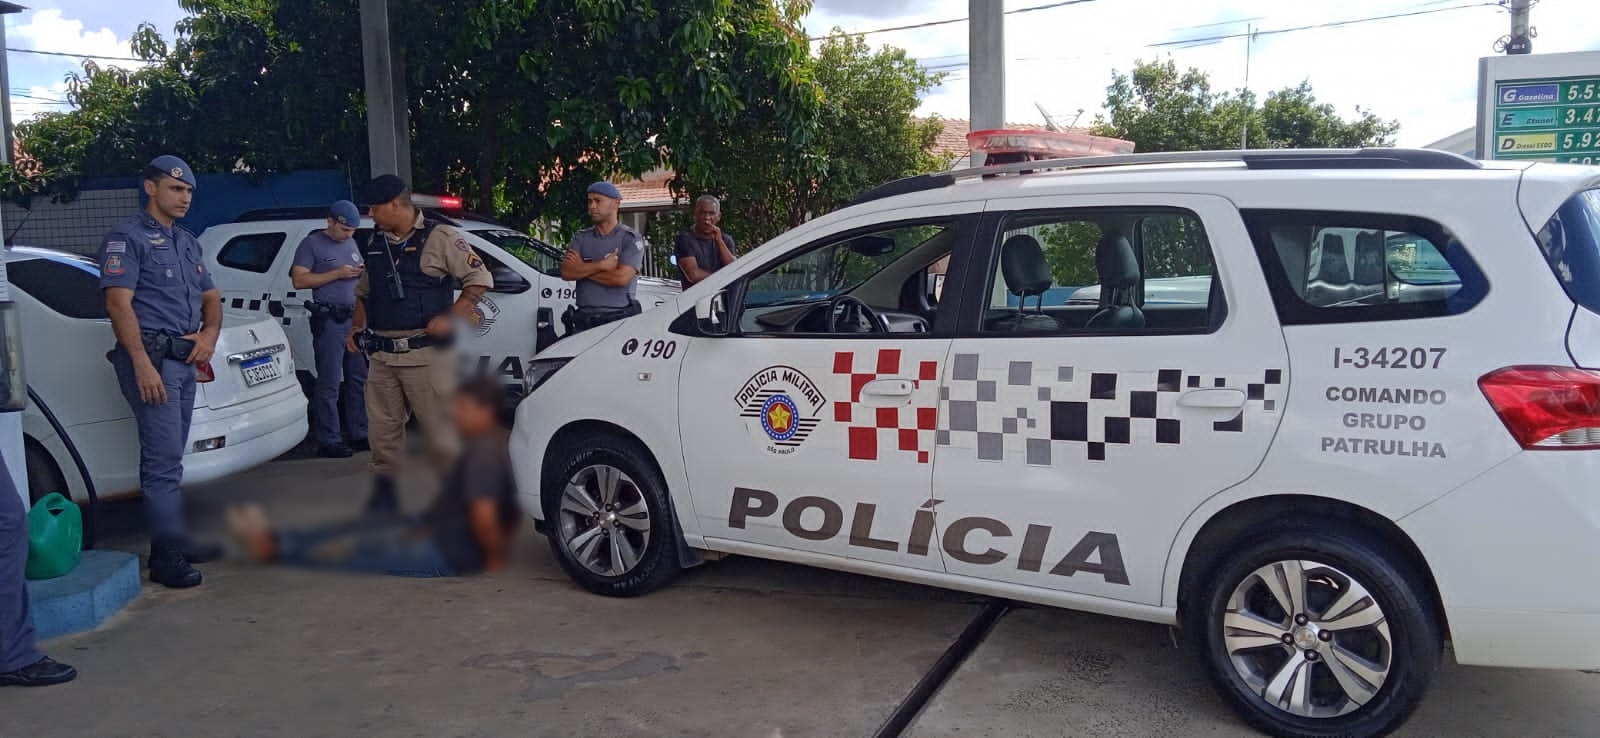 Suspeito de feminicídio em Minas Gerais é detido em Águas de Lindoia